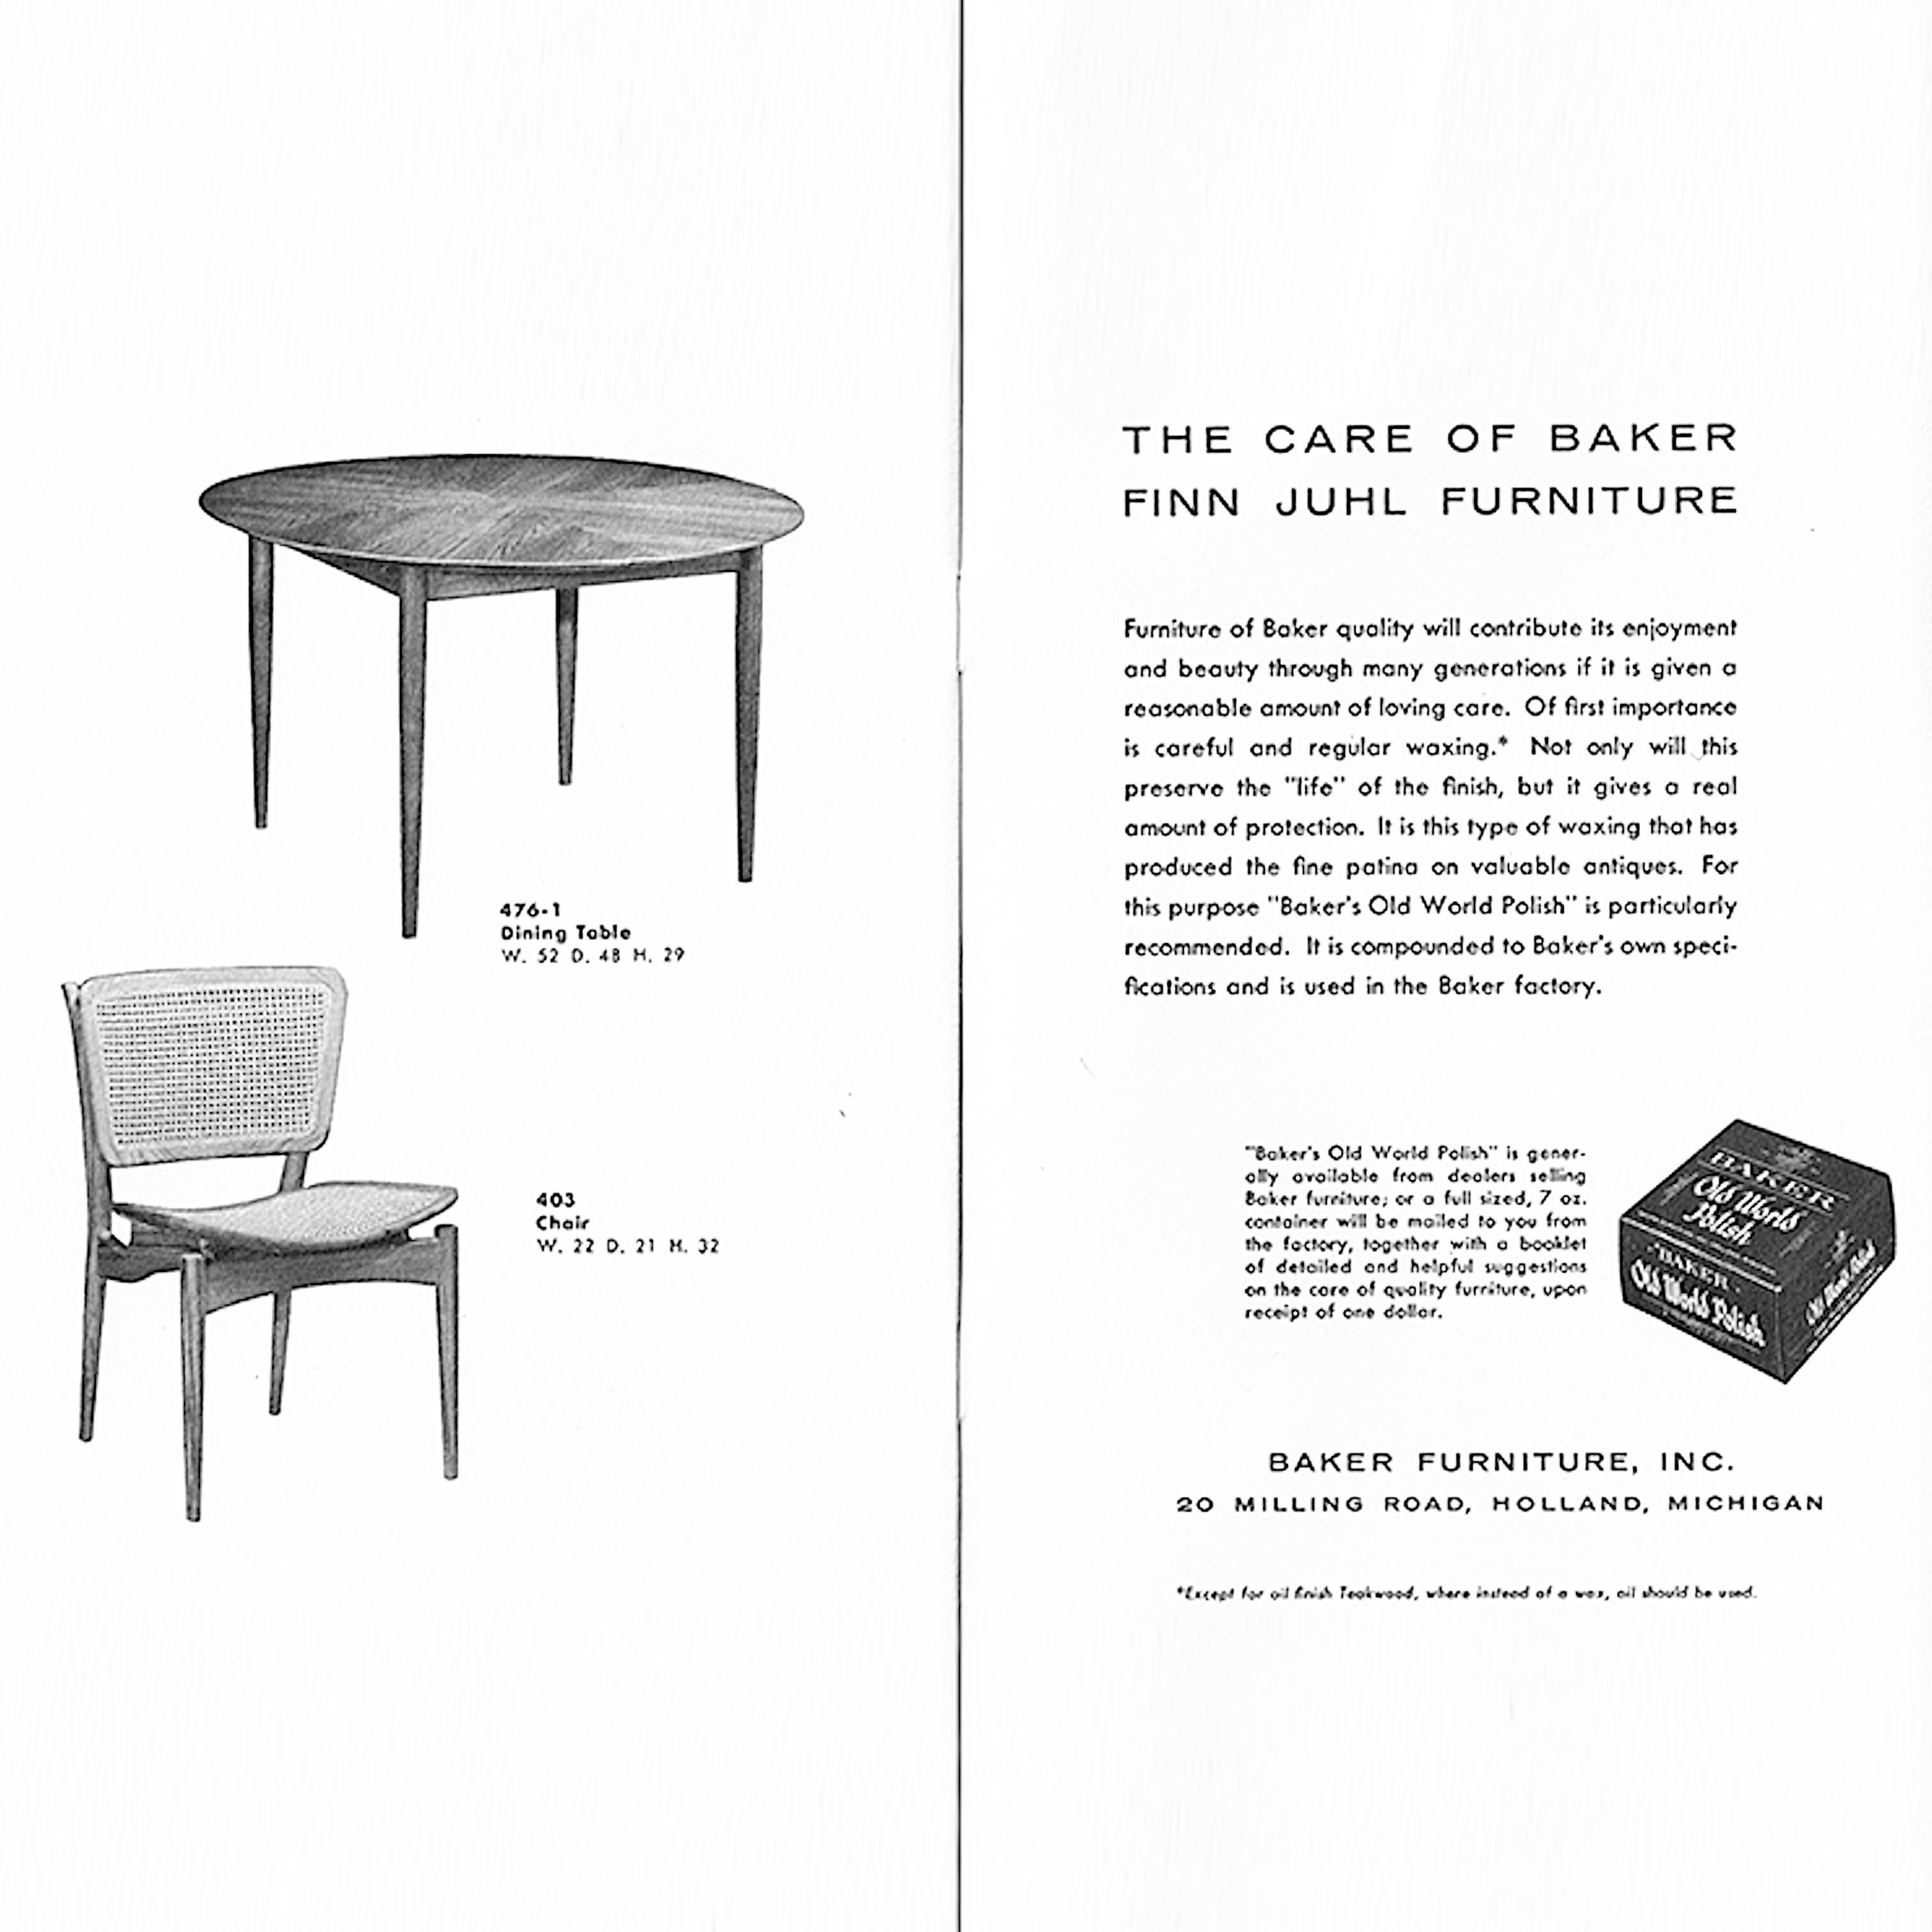 Original Finn Juhl Model NV 51/403 Teak & Cane Dining Side Chair by Baker 2